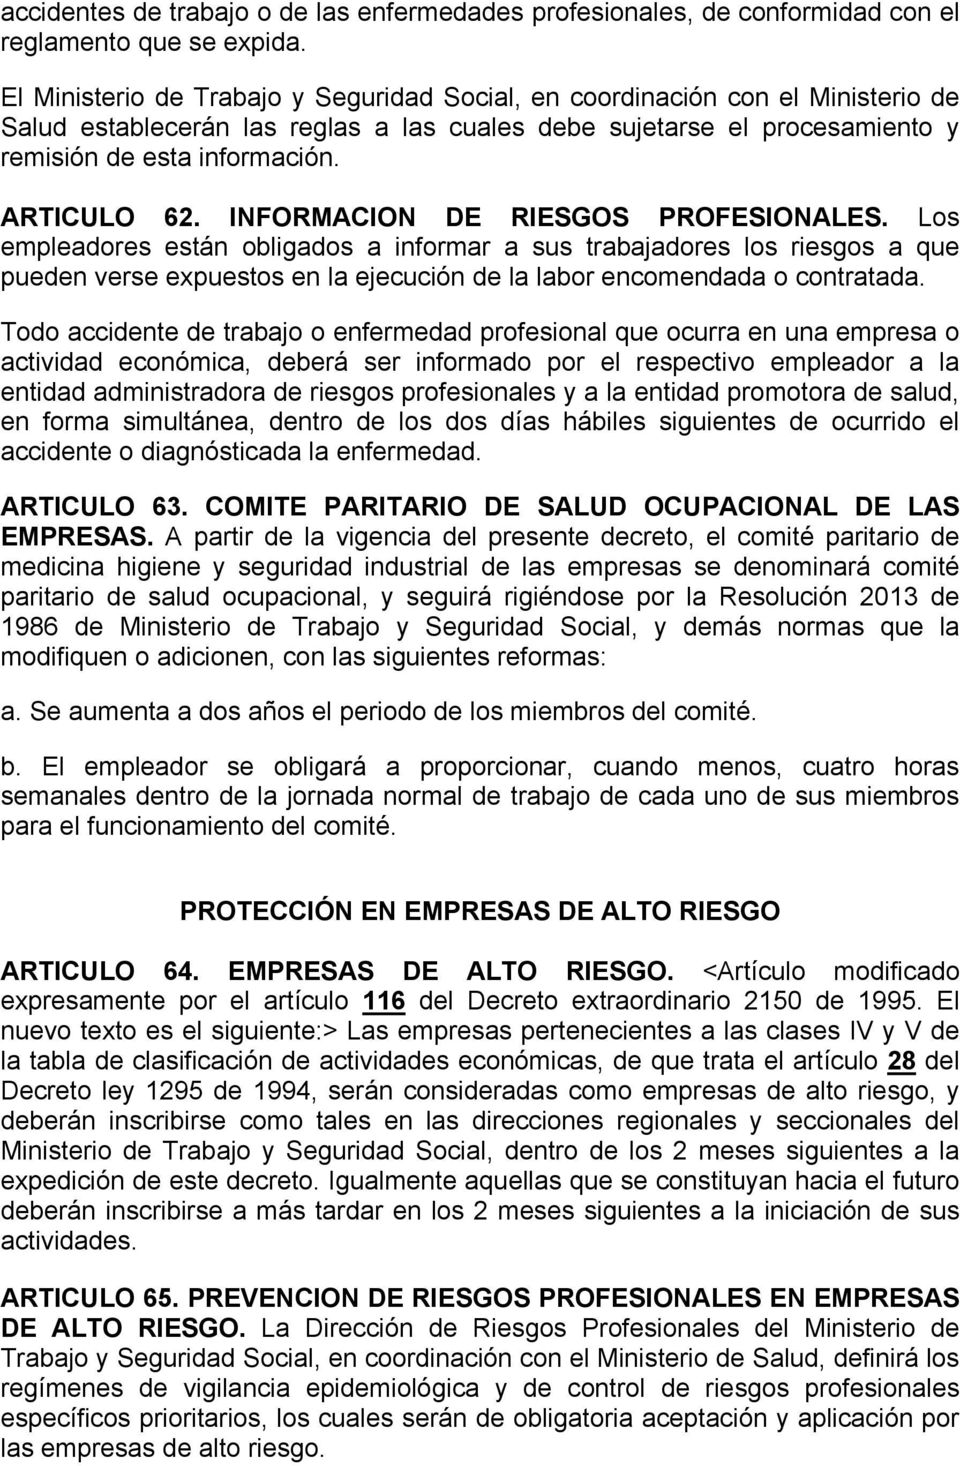 ARTICULO 62. INFORMACION DE RIESGOS PROFESIONALES.